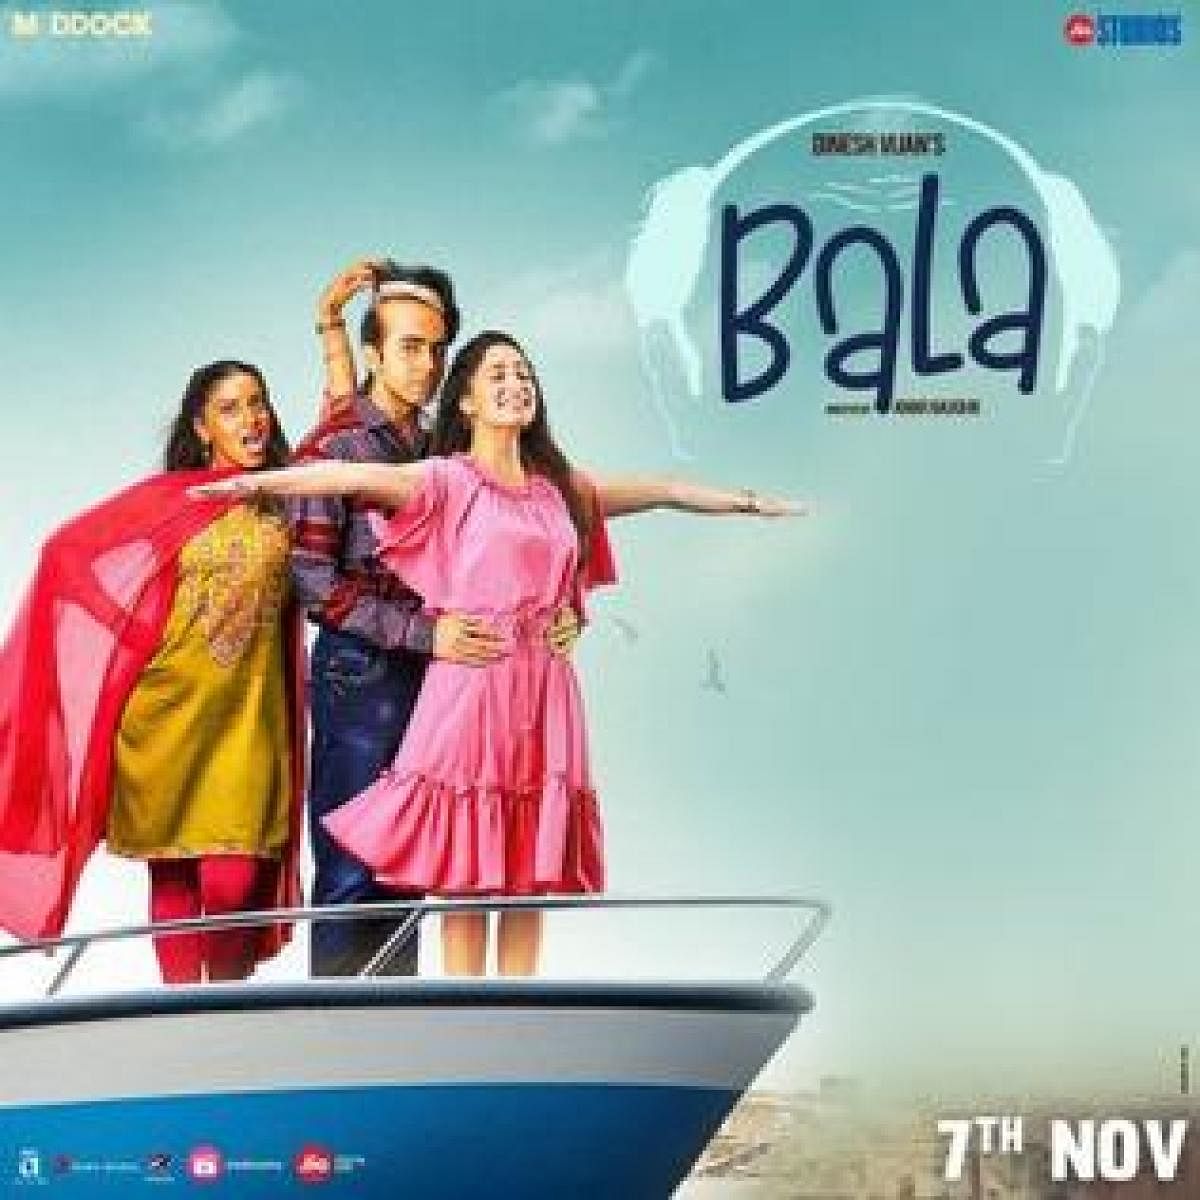 Bala film poster(Photo by Wikipedia)